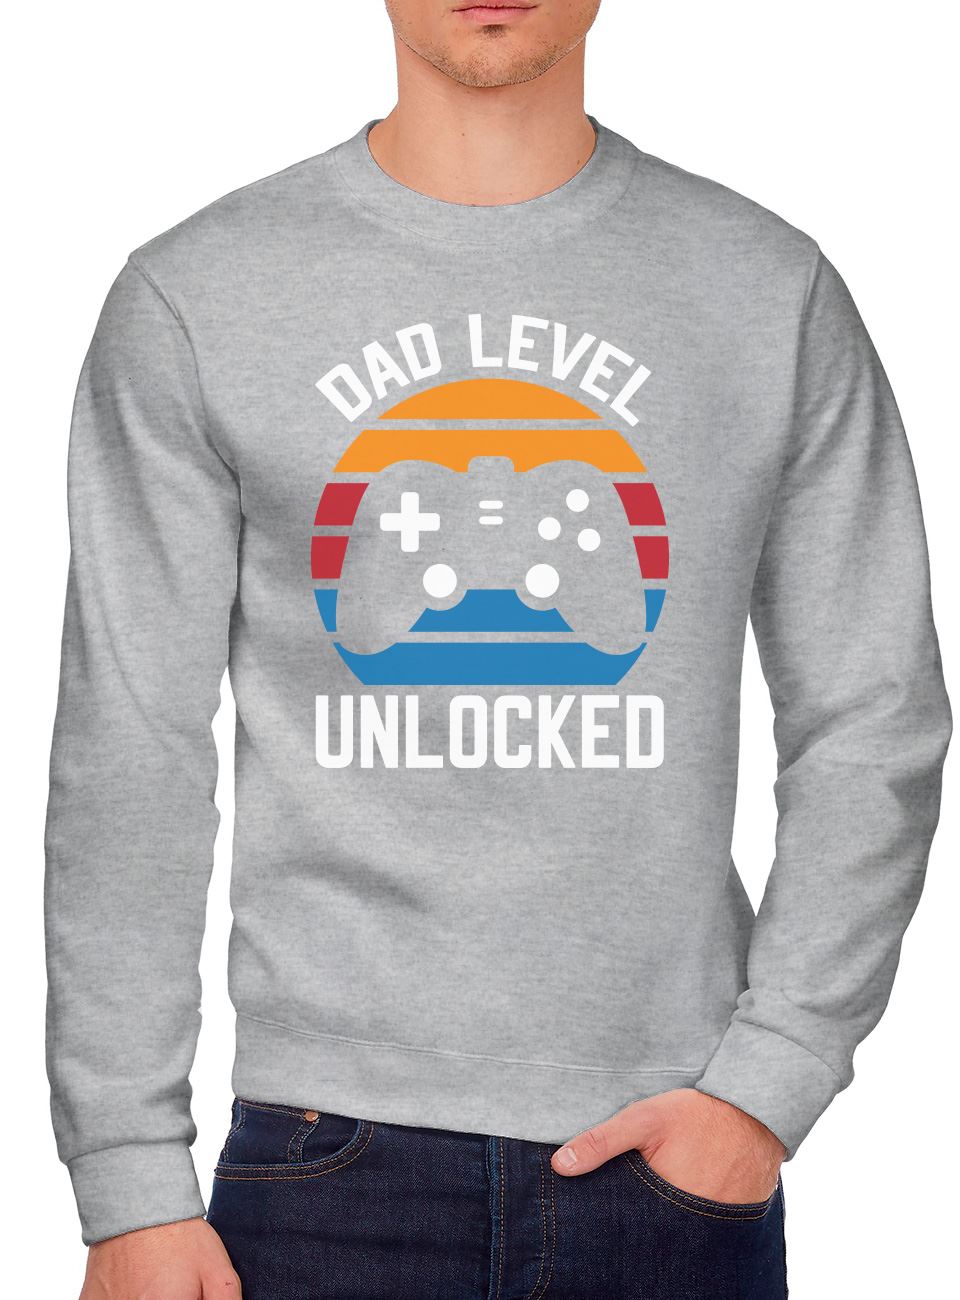 Dad Level Unlocked - Men's Sweatshirt